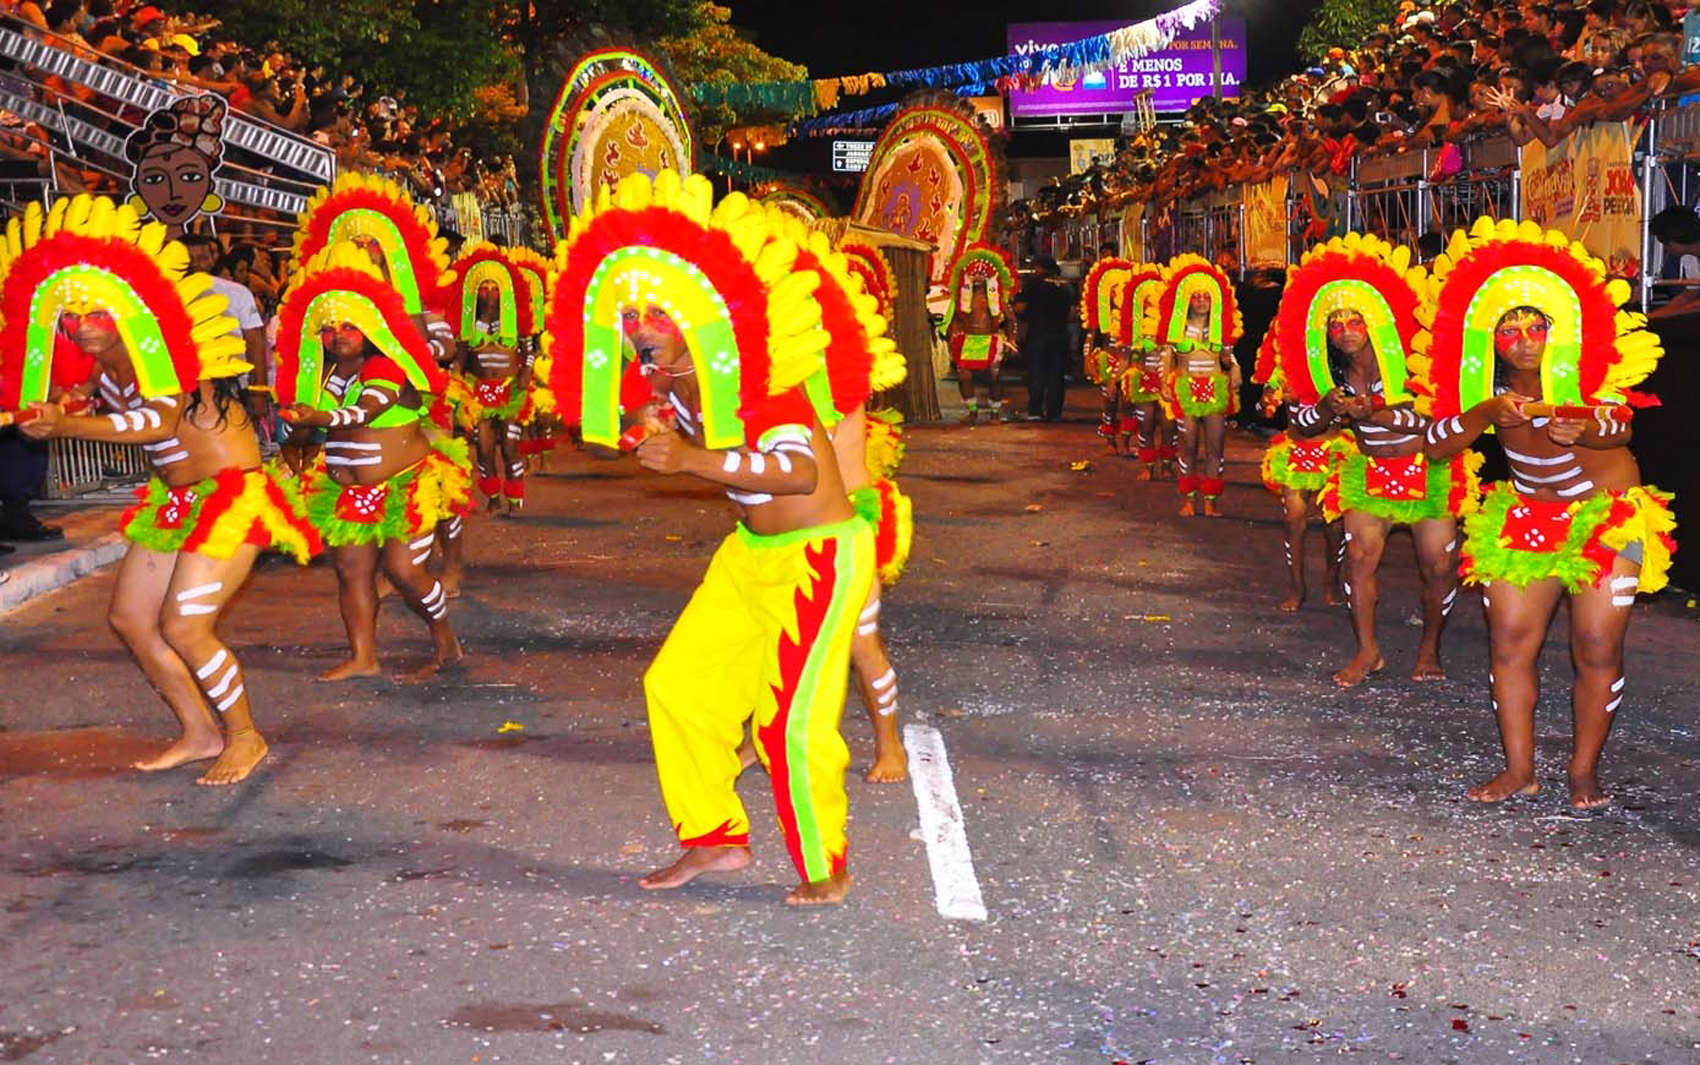 Começa neste Sábado o Carnaval Tradição de João Pessoa com esquema especial de trânsito e transporte